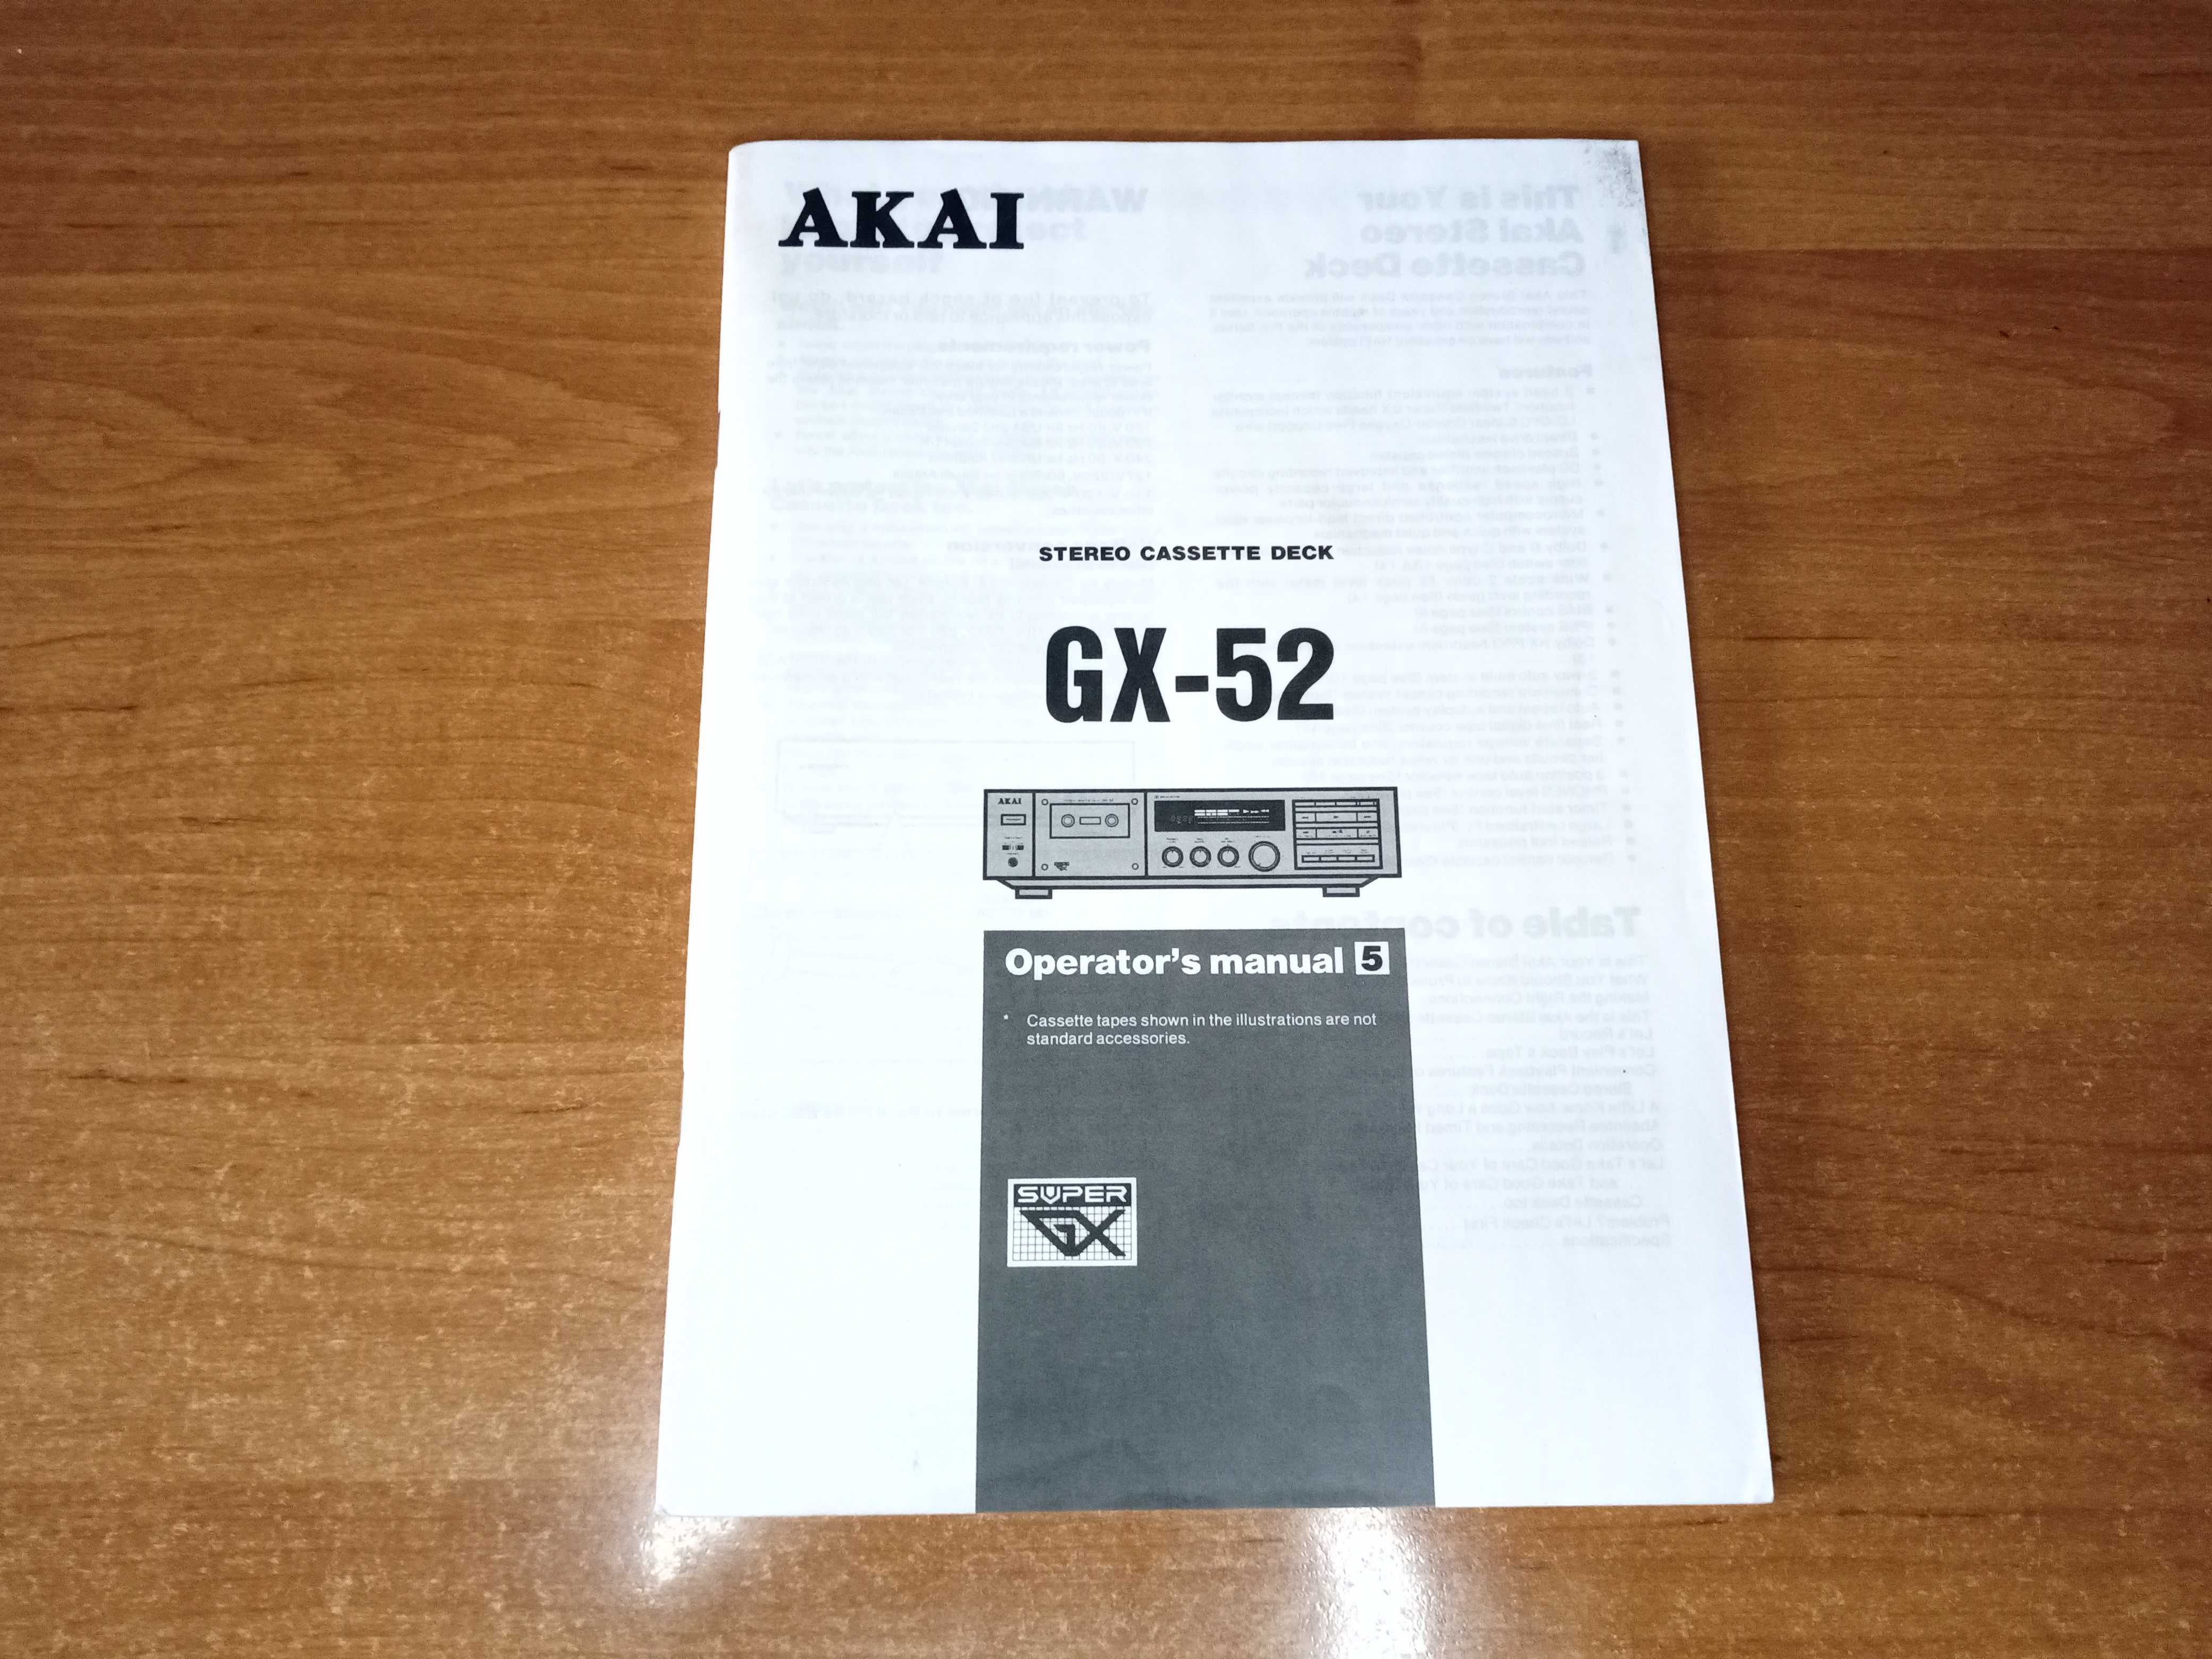 Akai GX-52 instrukcja obsługi magnetofonu